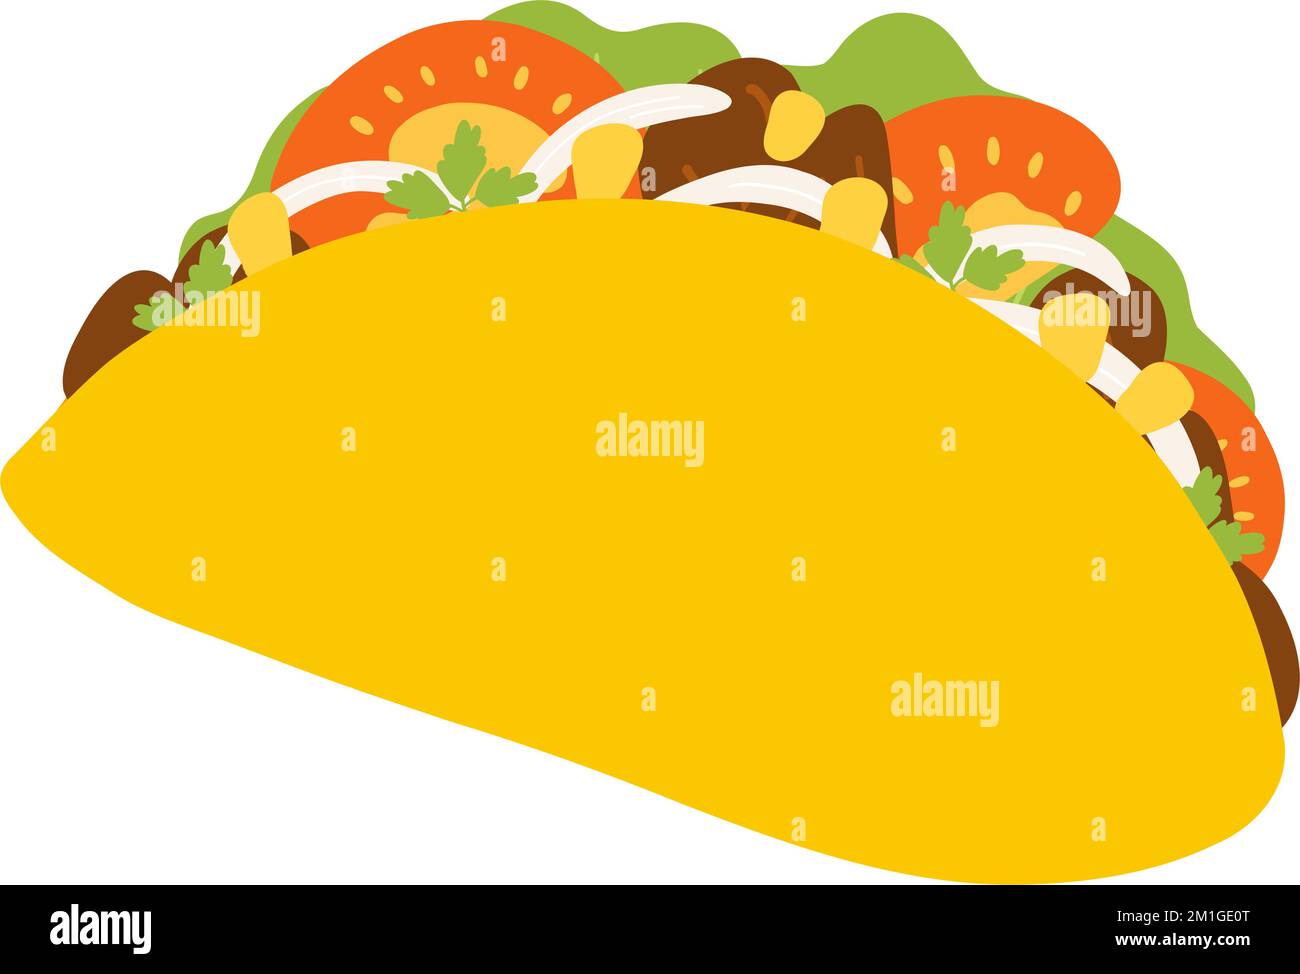 Tacos dans un style de dessin animé. Illustration vectorielle dessinée à la  main de la cuisine traditionnelle mexicaine, de la cuisine populaire, du  plat latino-américain avec des légumes frais, de la viande